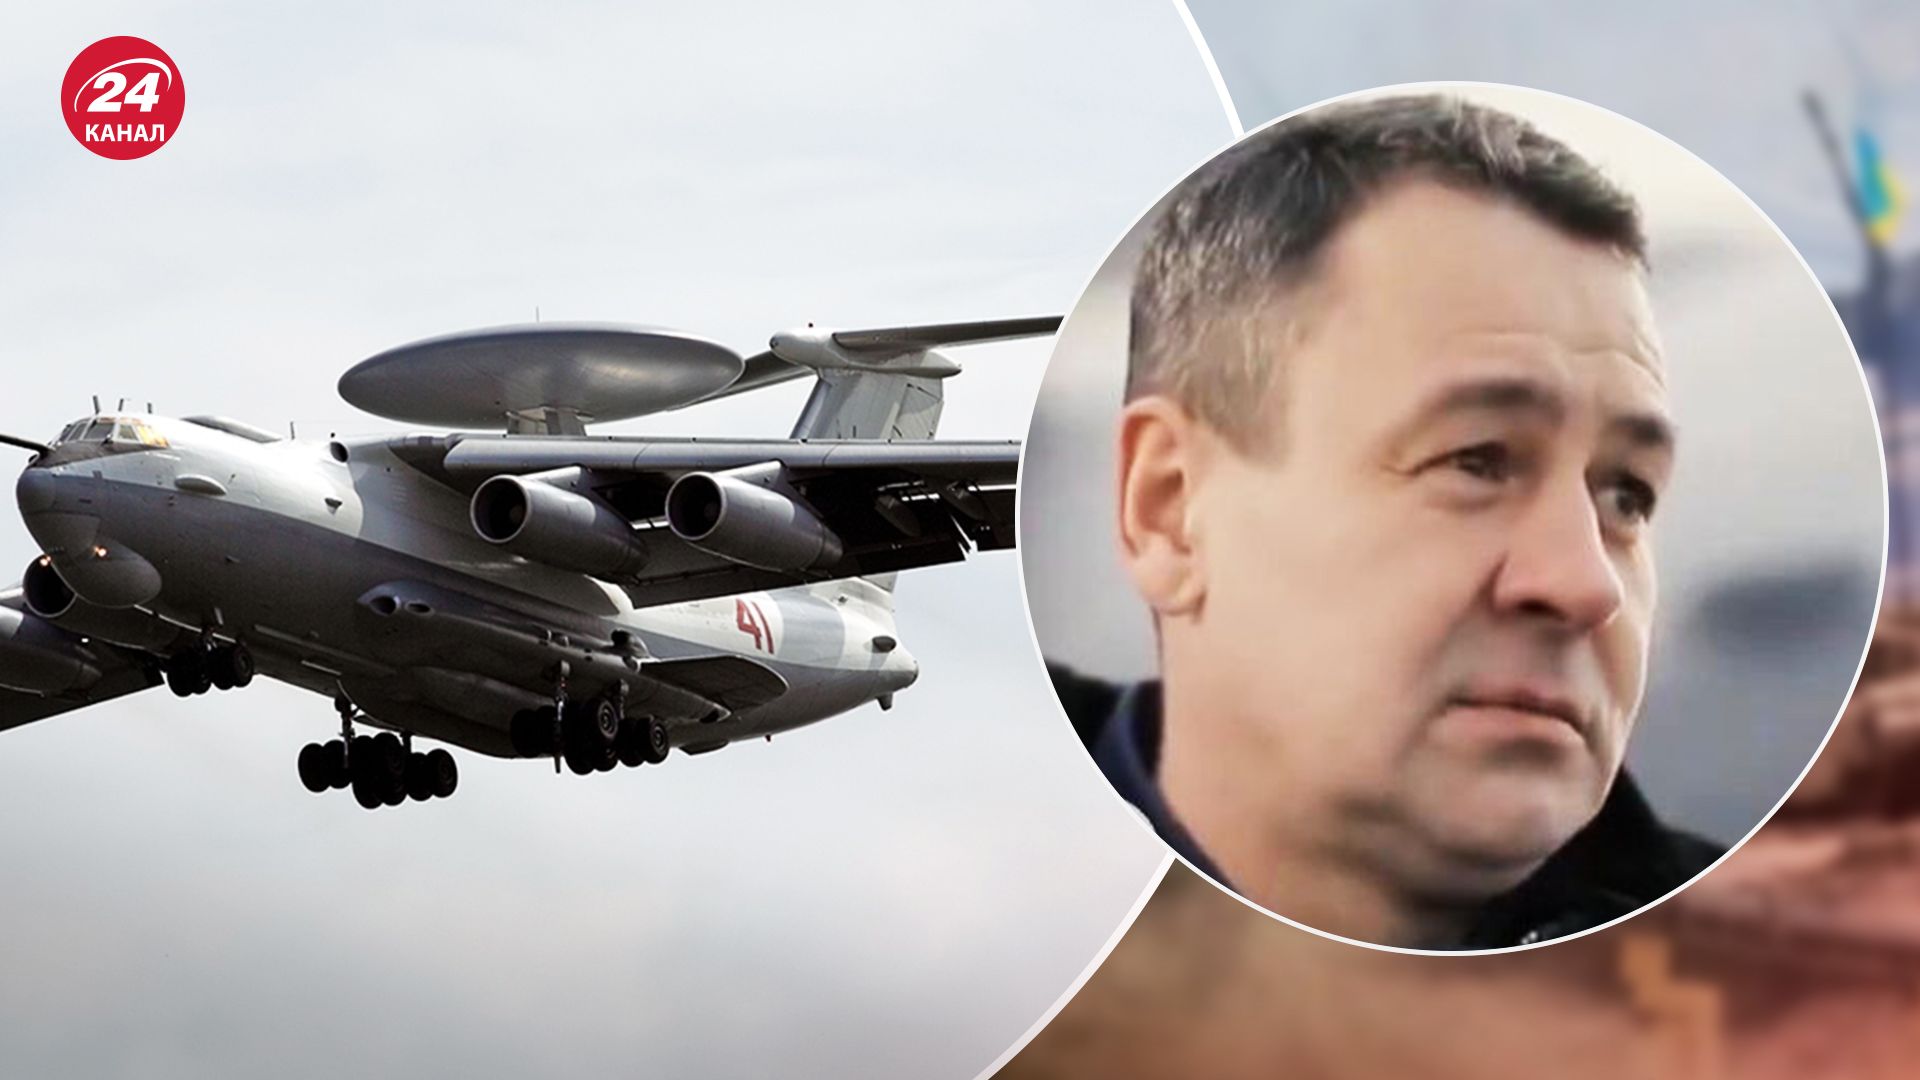 СМИ подтвердили гибель командира А-50 Левченко